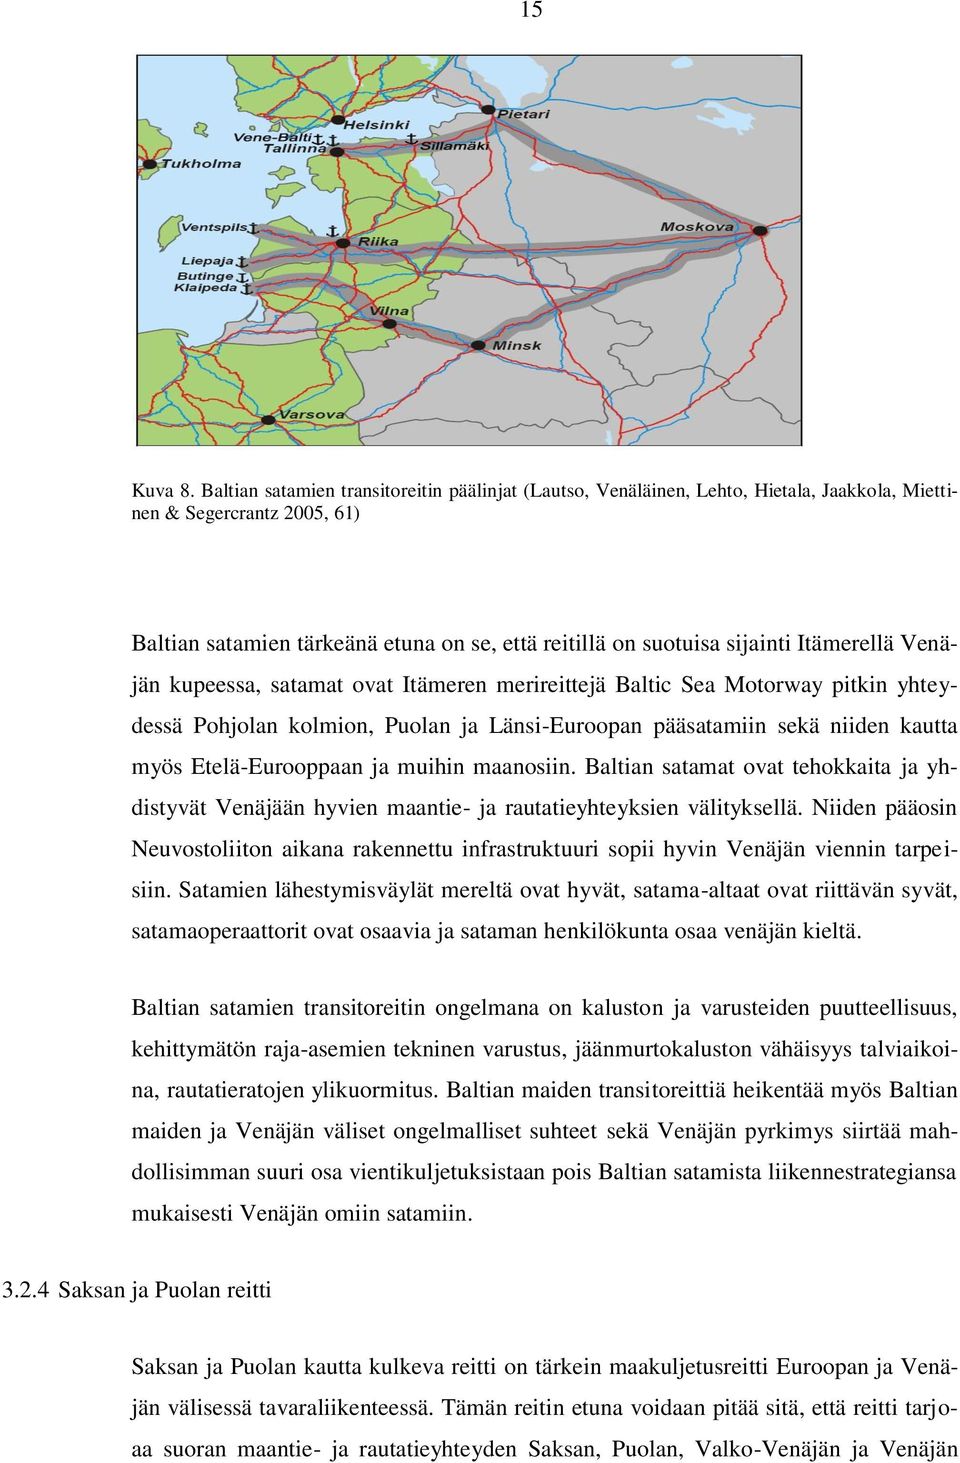 Itämerellä Venäjän kupeessa, satamat ovat Itämeren merireittejä Baltic Sea Motorway pitkin yhteydessä Pohjolan kolmion, Puolan ja Länsi-Euroopan pääsatamiin sekä niiden kautta myös Etelä-Eurooppaan